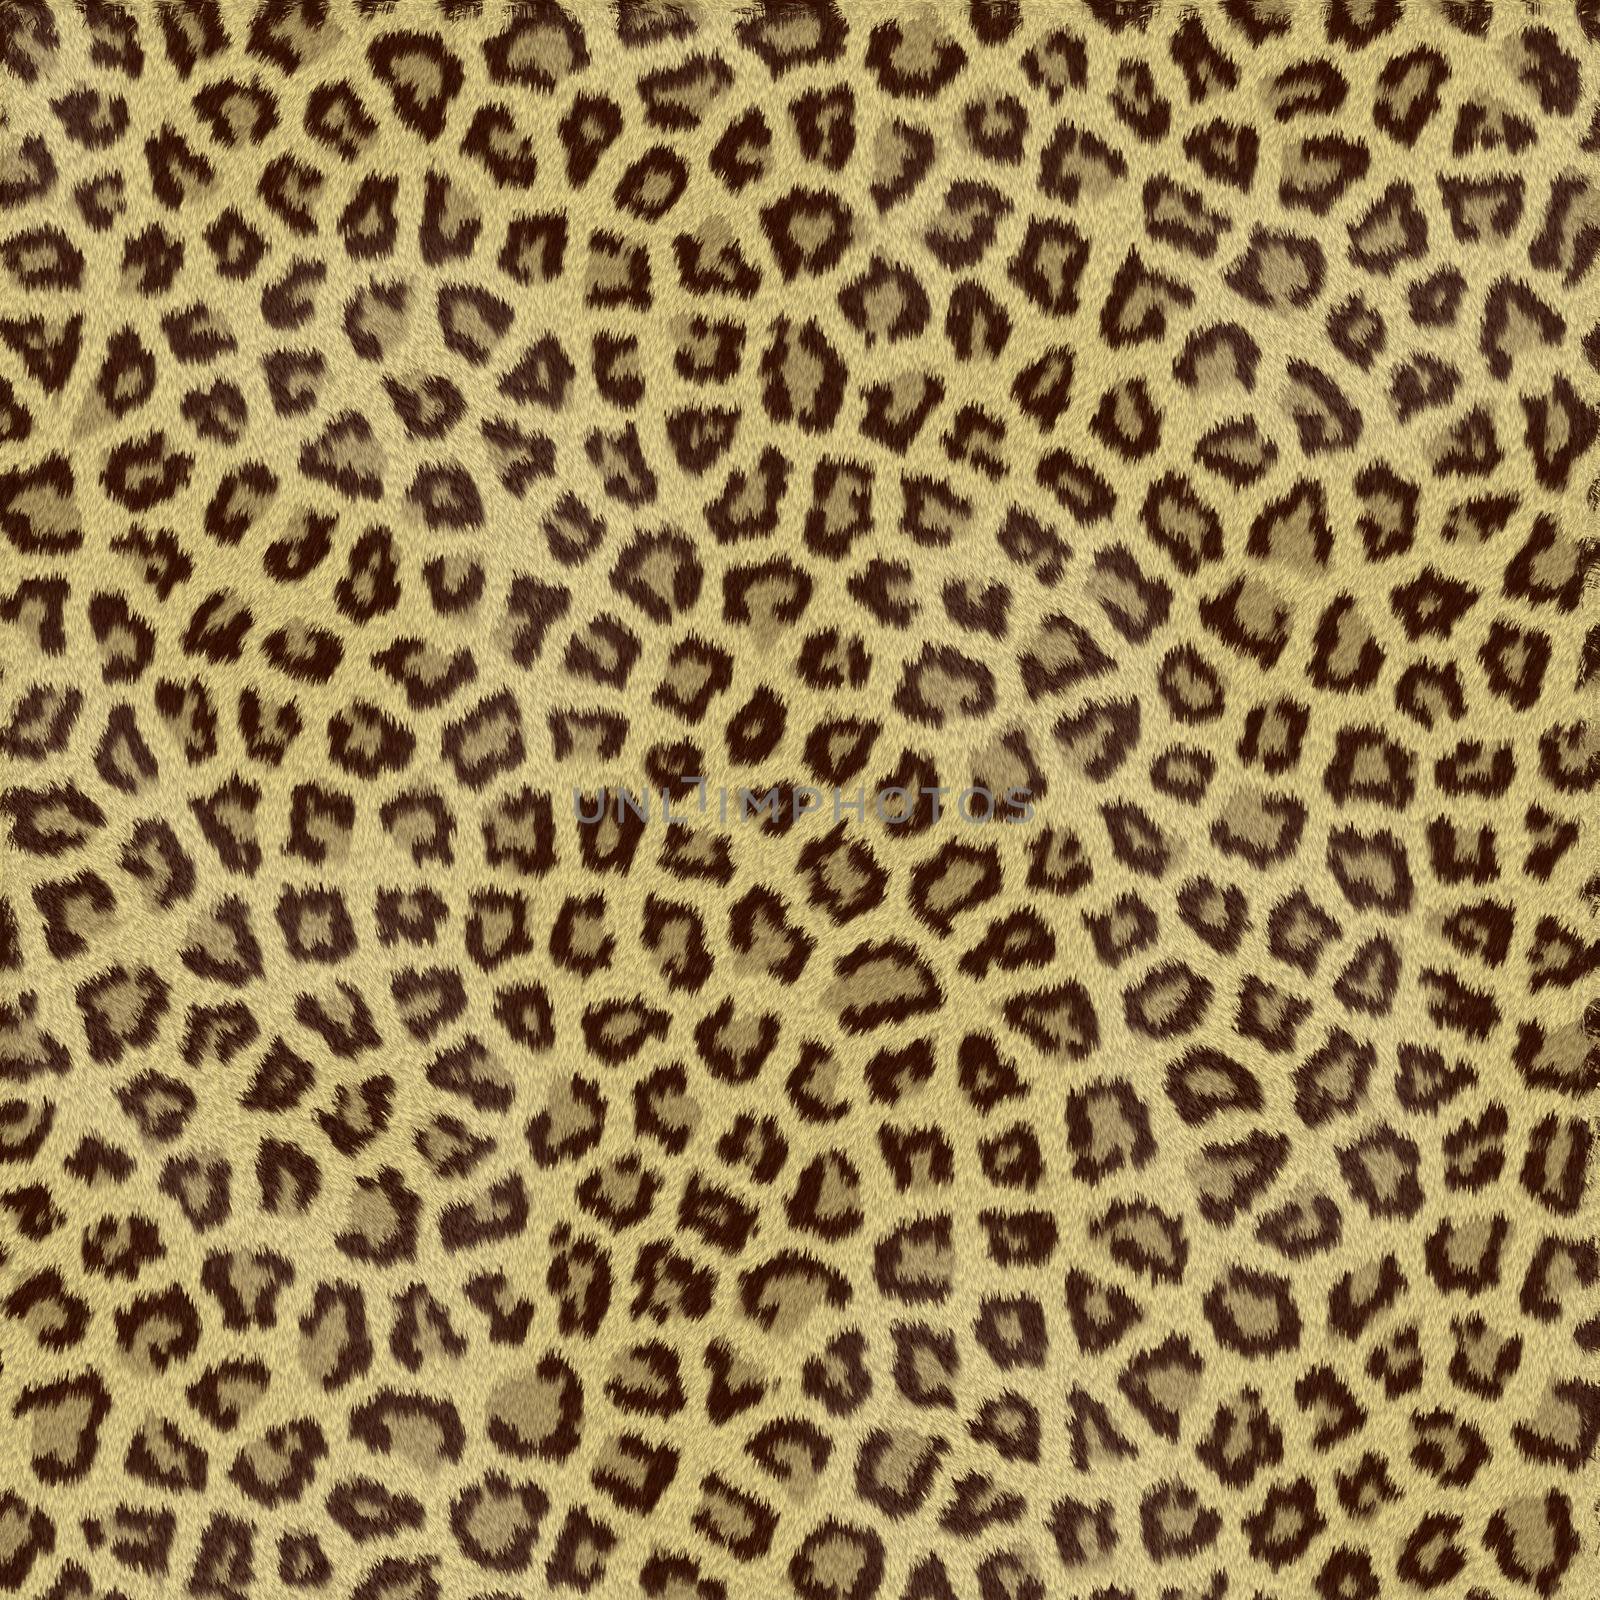 Jaguar Fur by Georgios